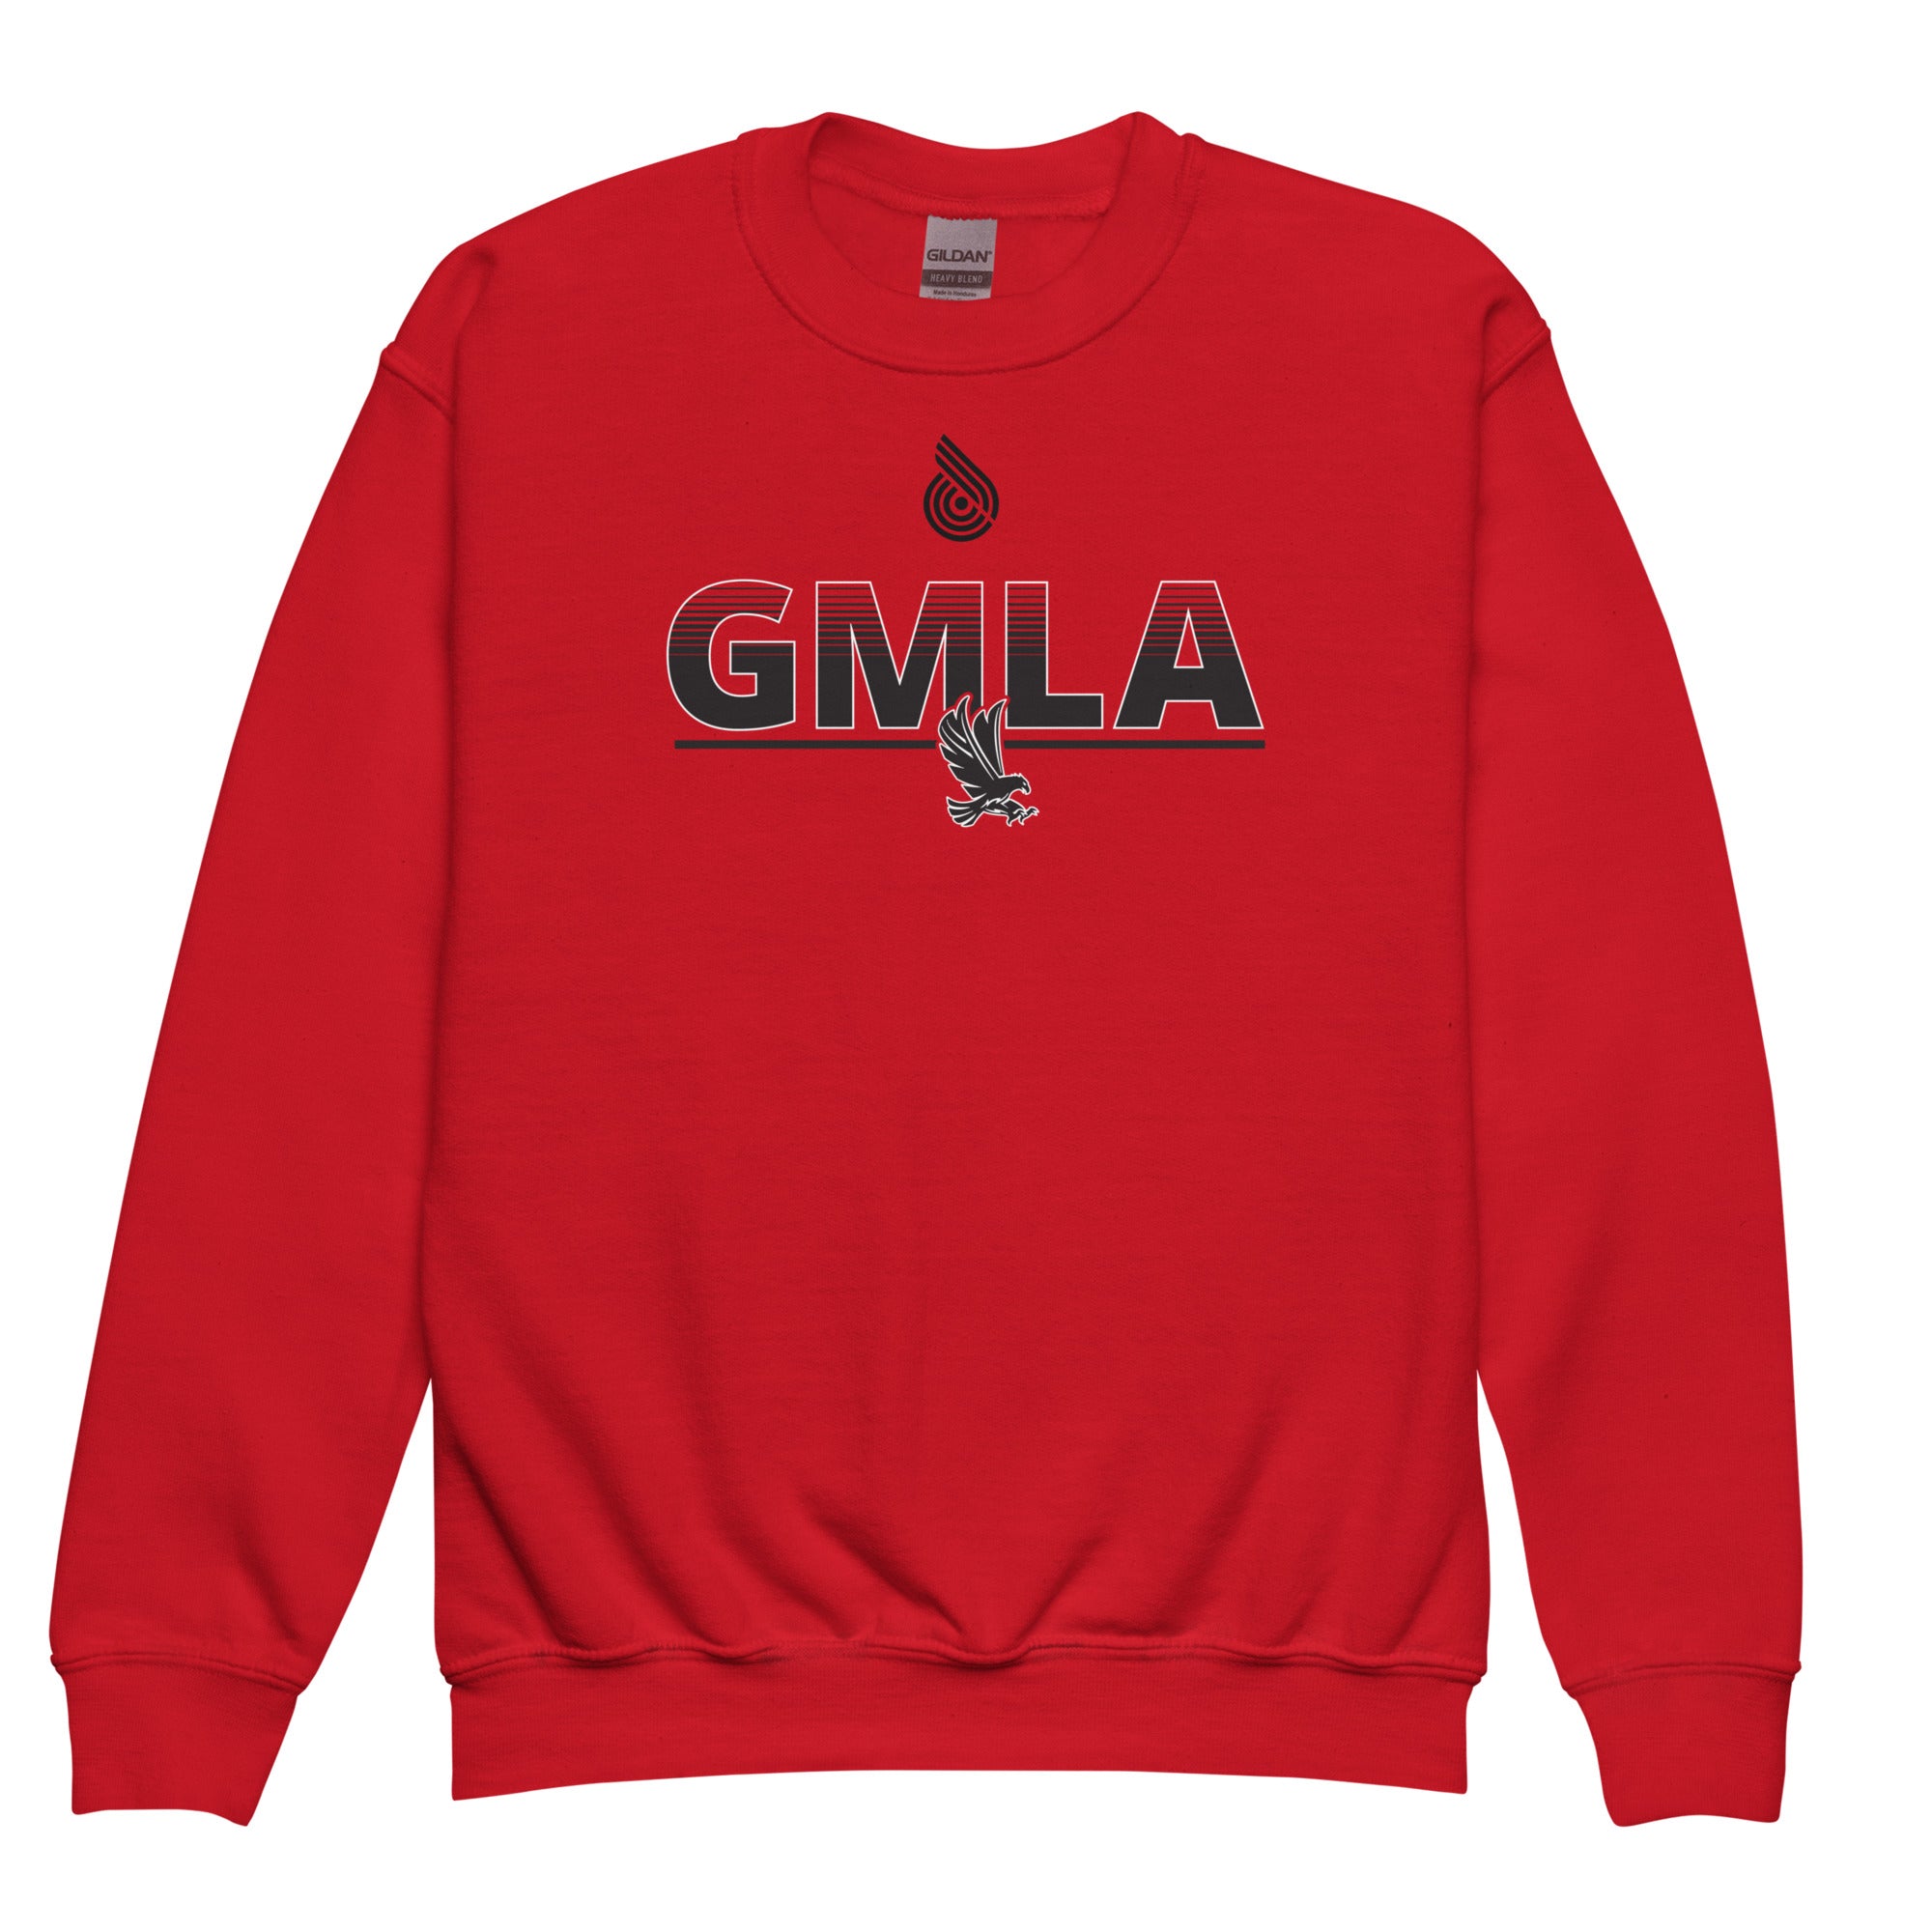 GMLA Youth crewneck sweatshirt